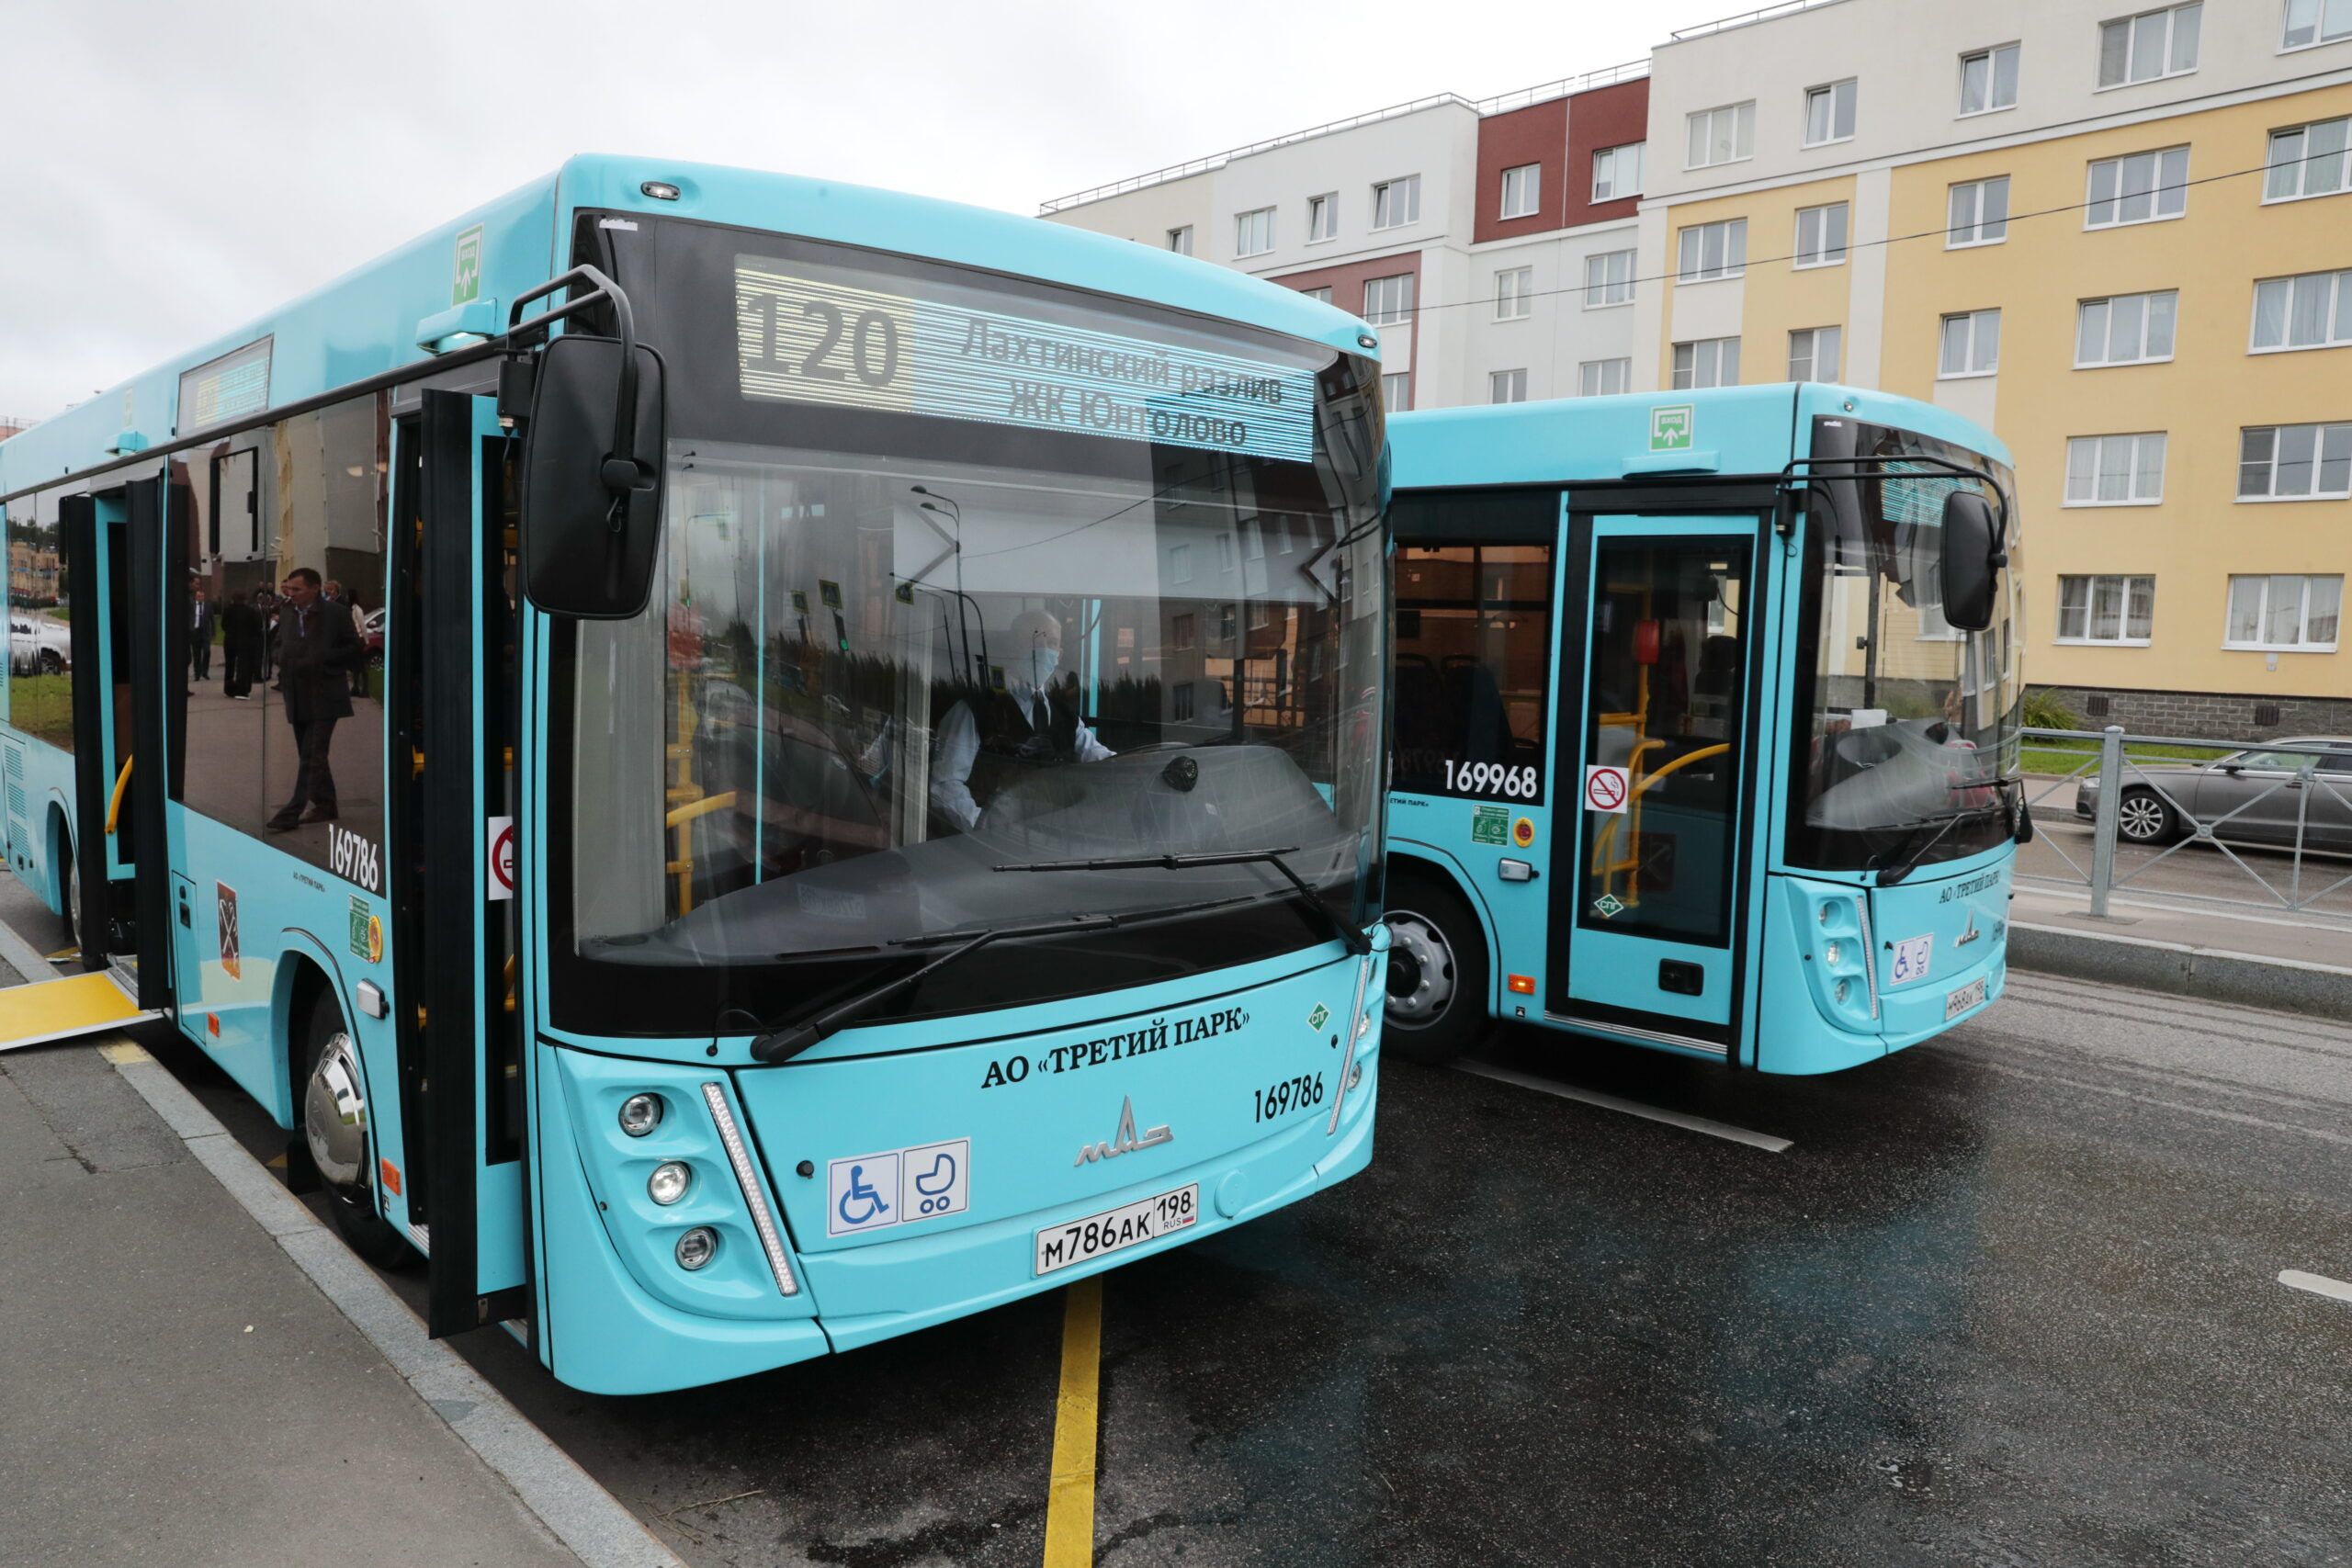 Вице-губернатор Поляков признал опасность использования недавно купленных автобусов МАЗ